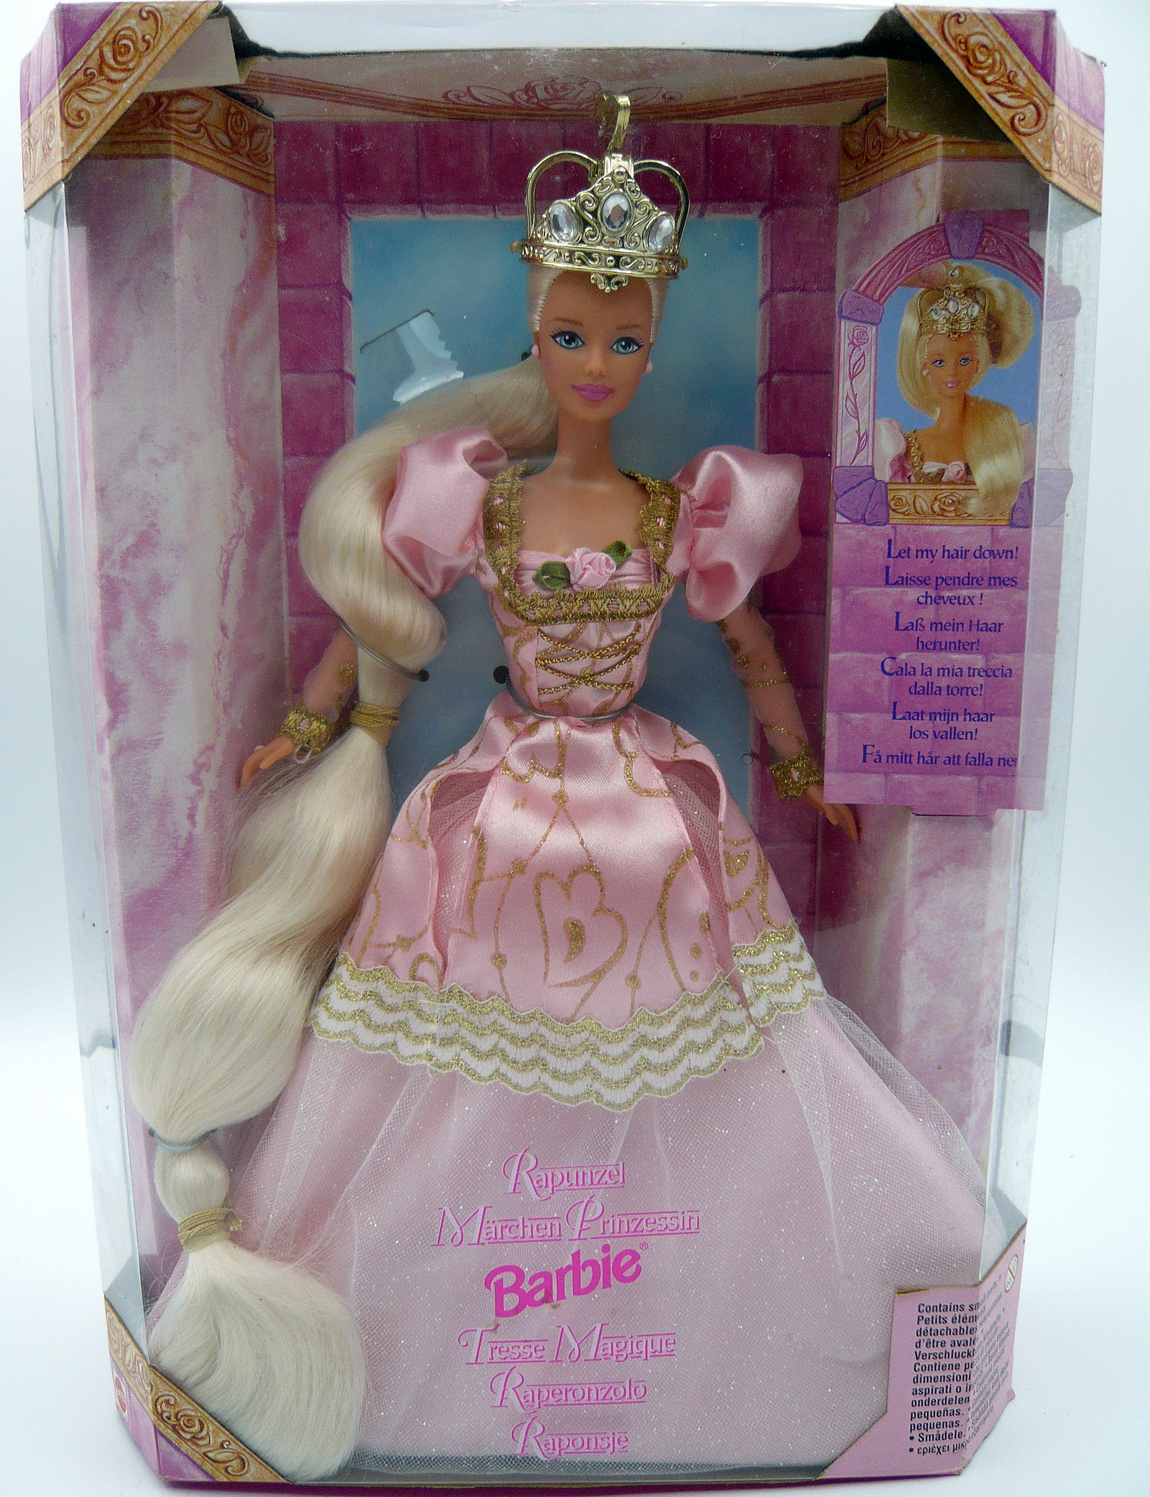 Barbie tresse magique